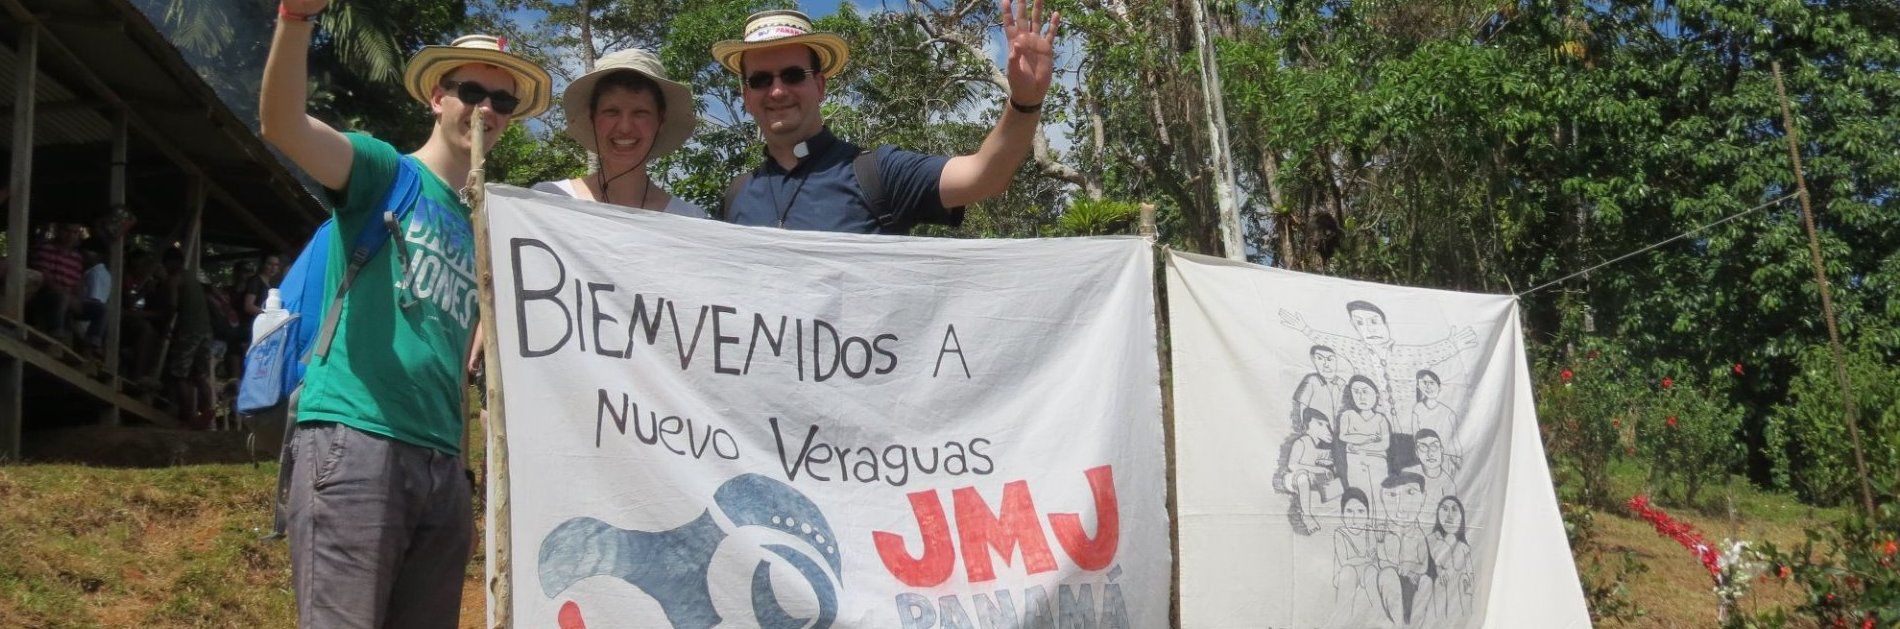 Kleingruppen Eiterfeld und Oblaten erleben drei Tage bei der Landbevölkerung Panamas